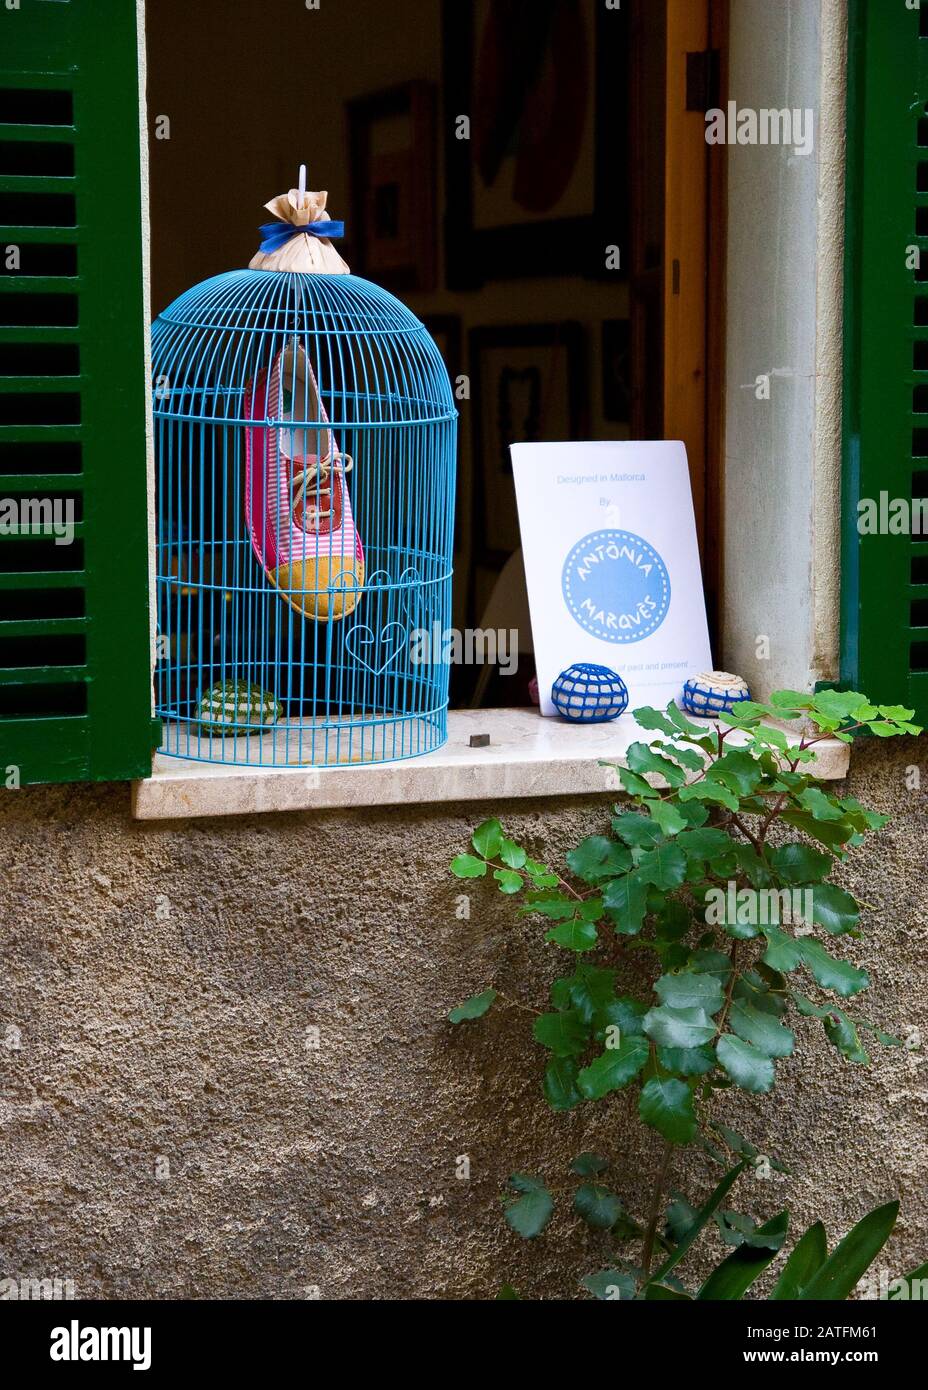 Blauer Vogelkäfig dekoriert, mit gemalten Schuh innen an rustikalem grünen Fenster. Käfig ohne Vogel im Inneren, rustikale Hausdekoration. Stockfoto